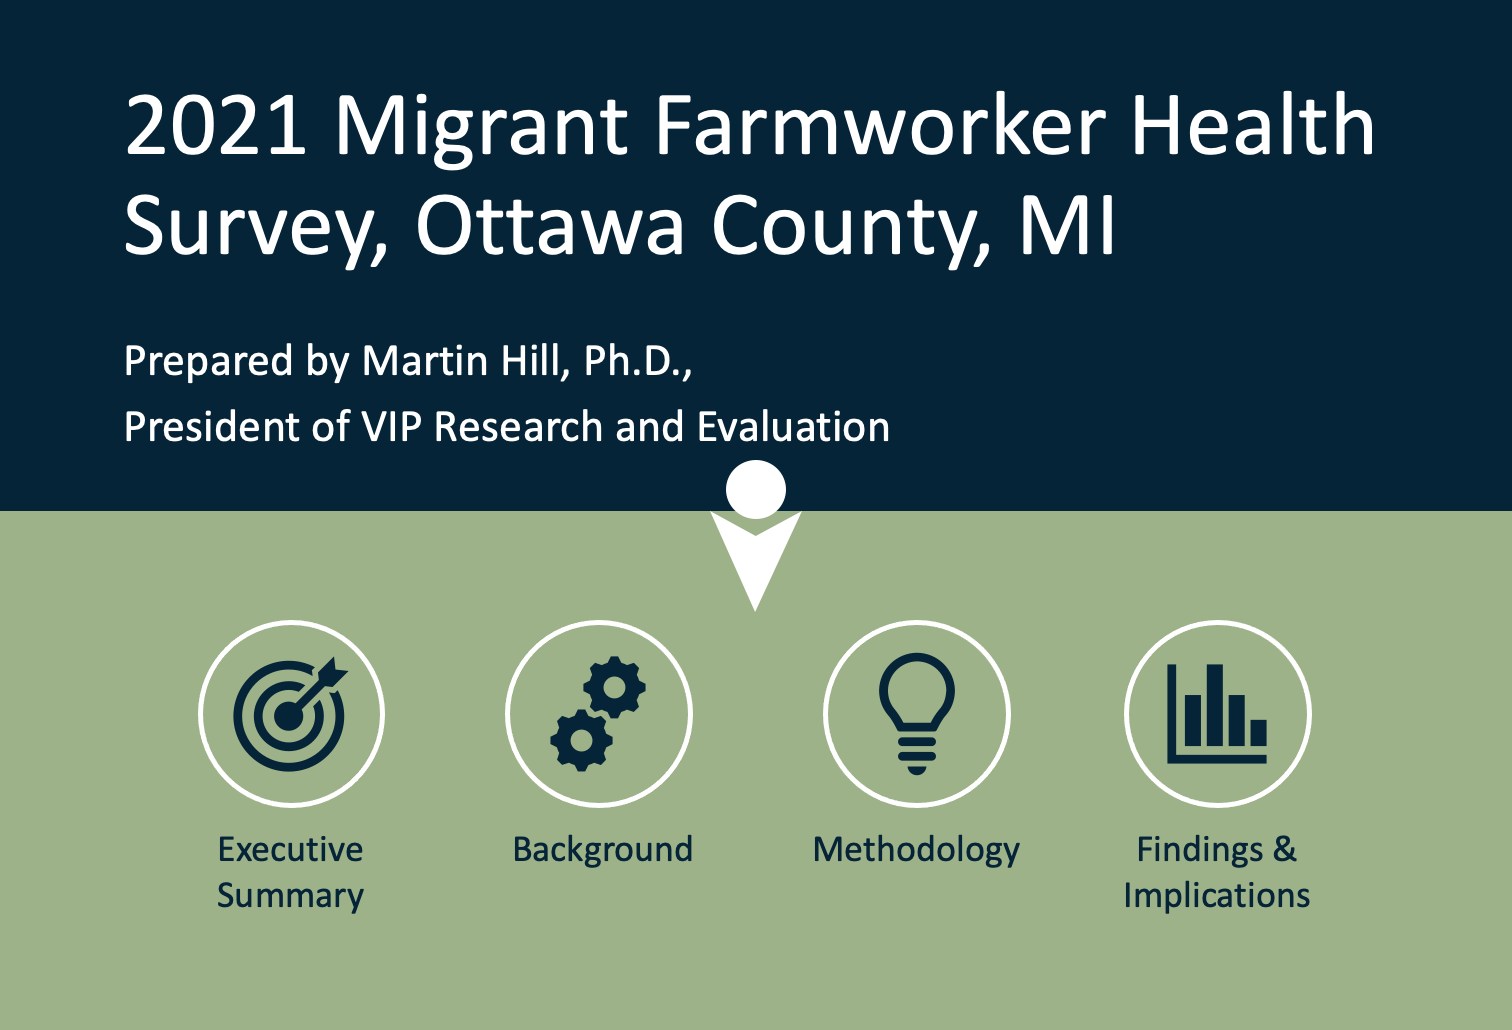 Migrant Farmworker Health Survey 